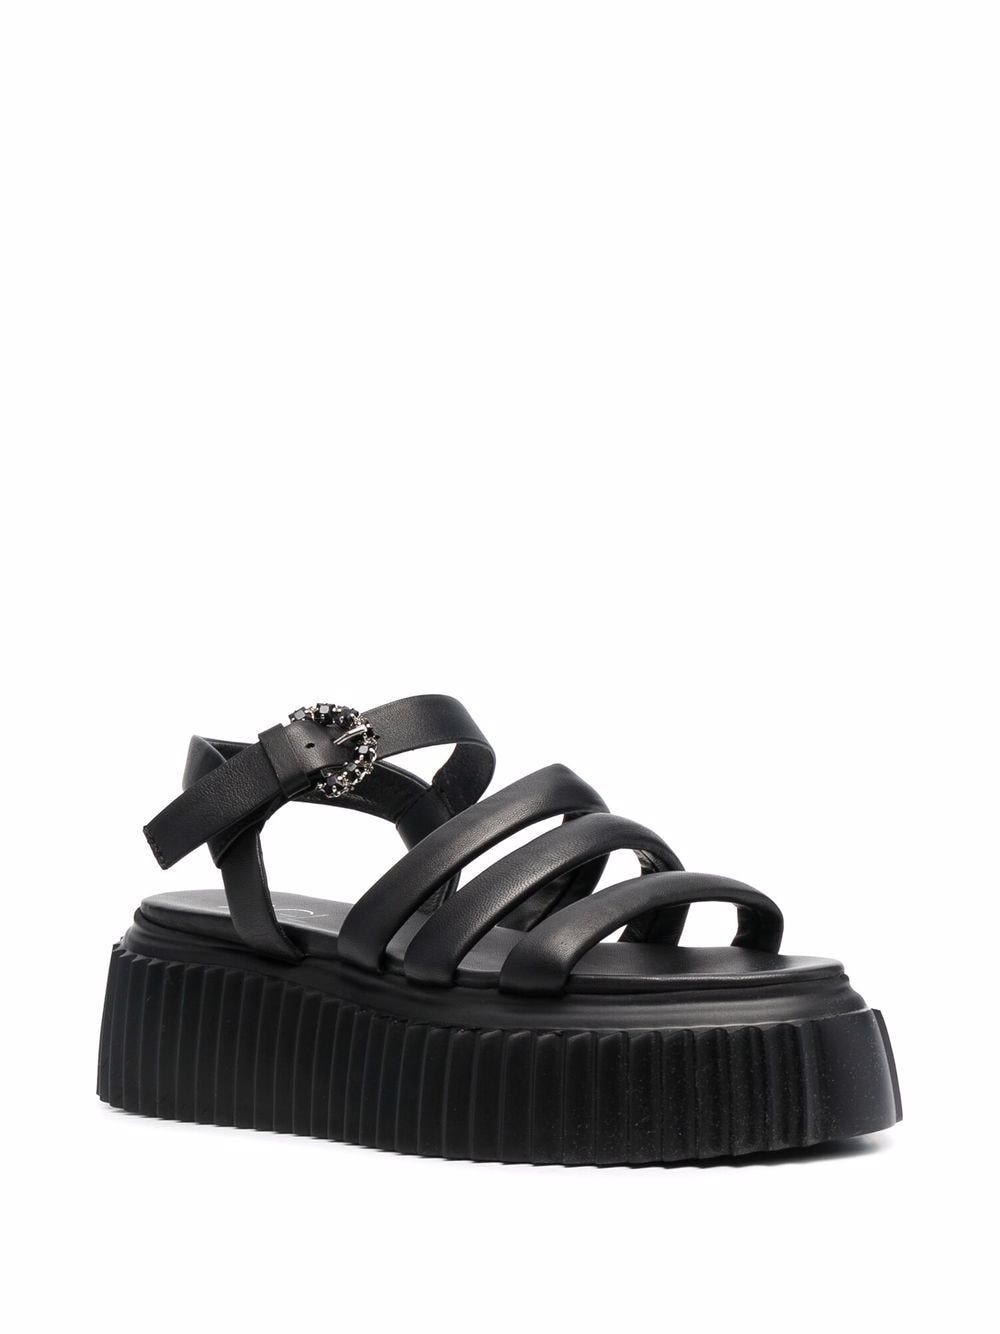 agl side-buckle strap sandals - black